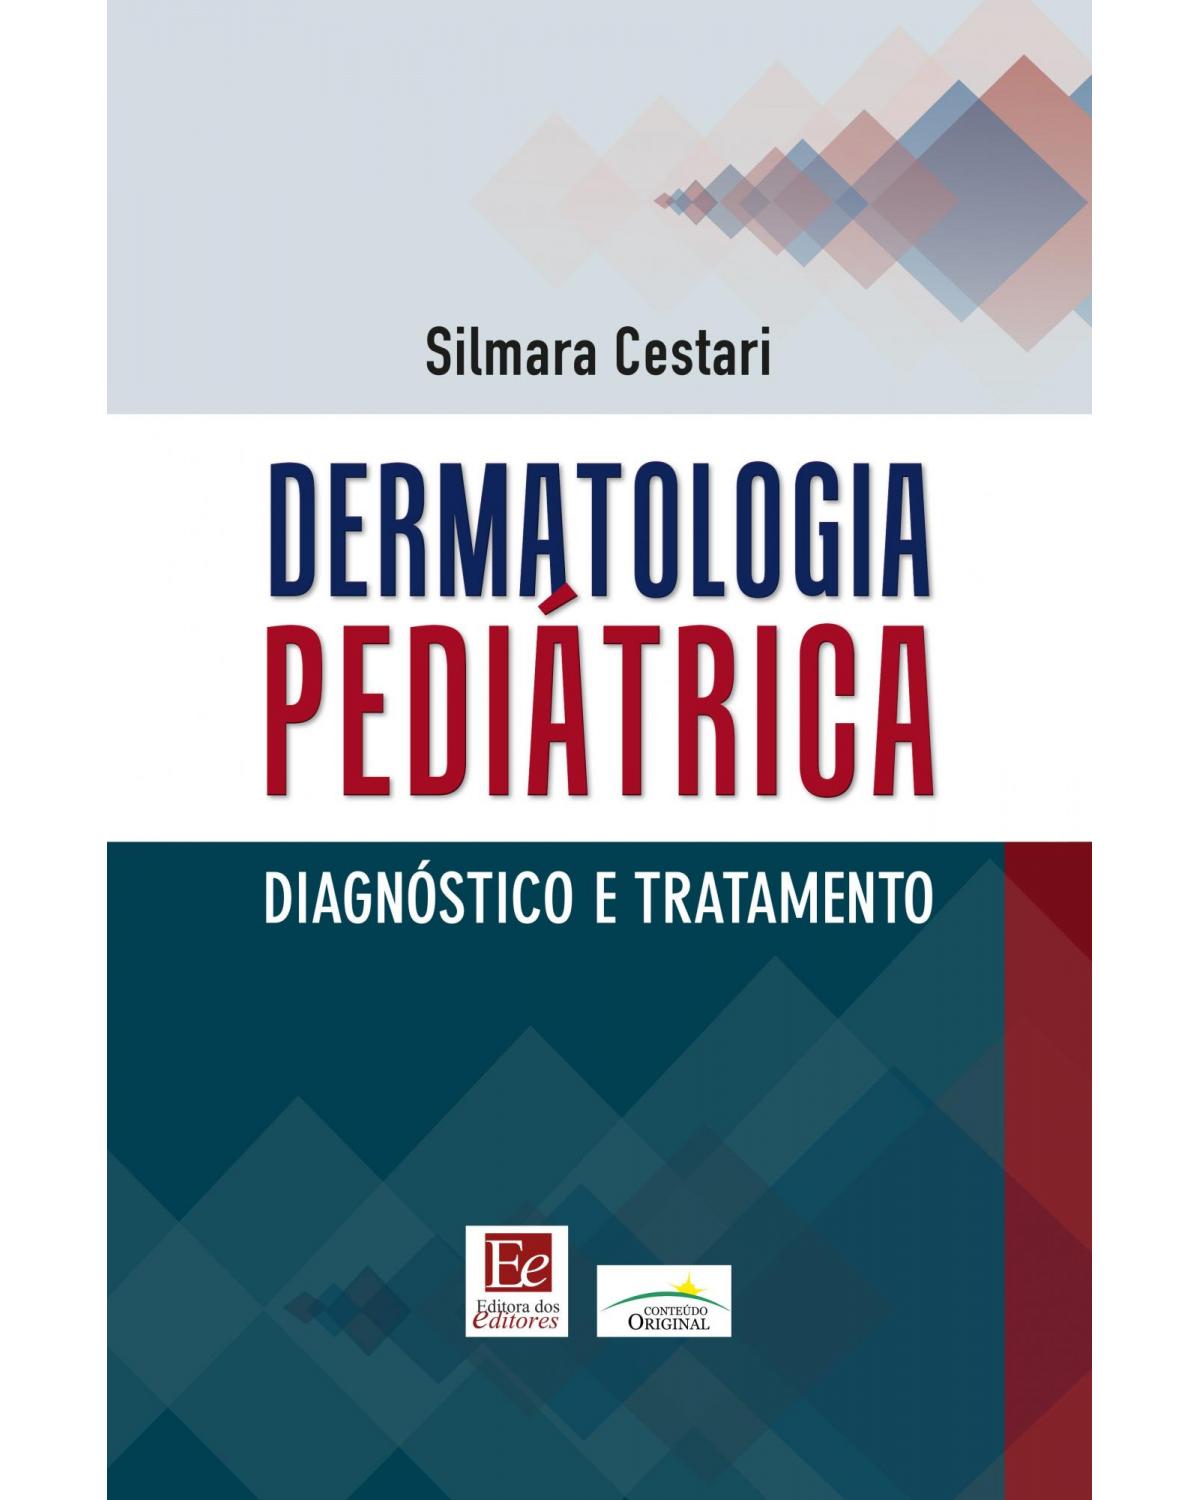 Dermatologia pediátrica: Diagnóstico e tratamento - 1ª Edição